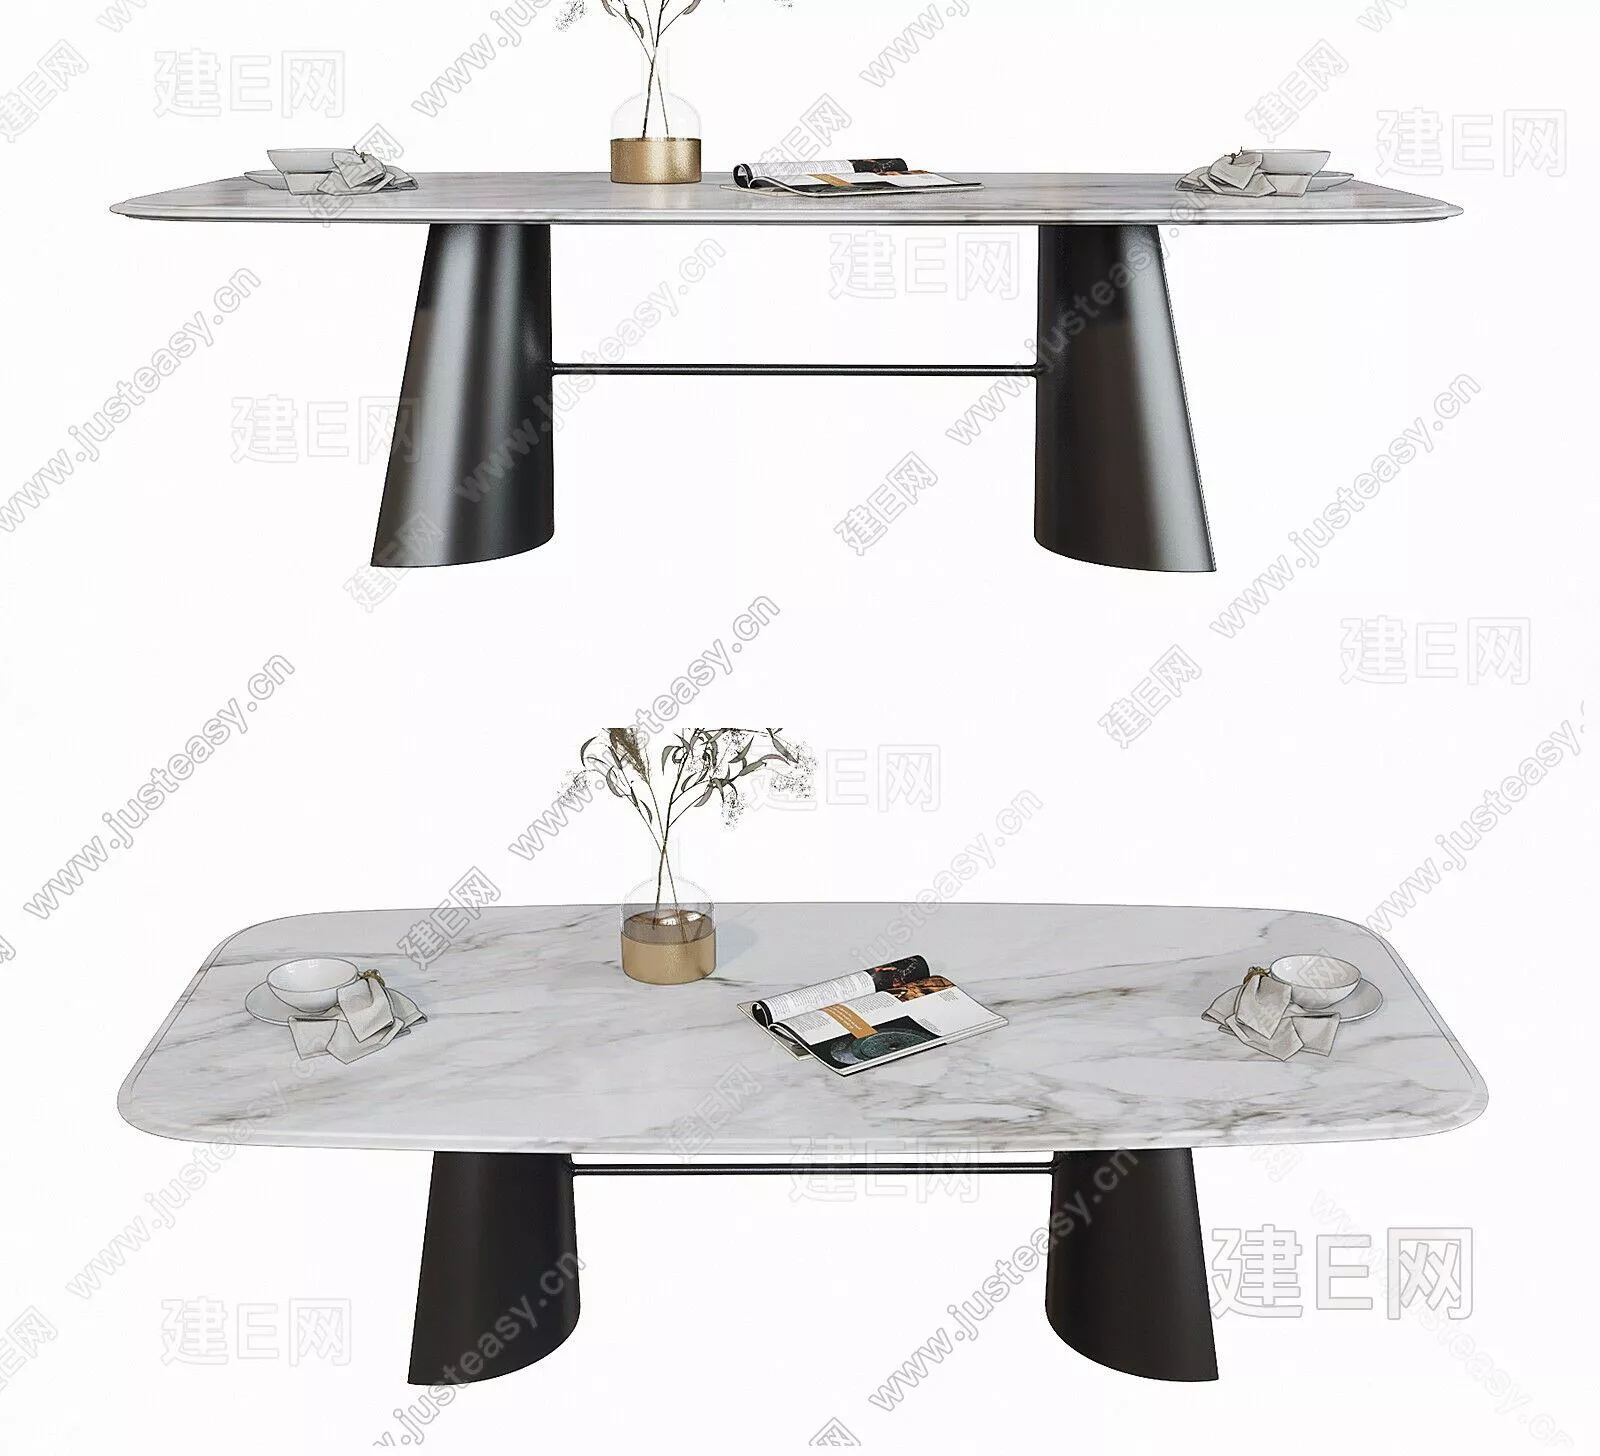 MODERN DINING TABLE SET - SKETCHUP 3D MODEL - ENSCAPE - 110576920